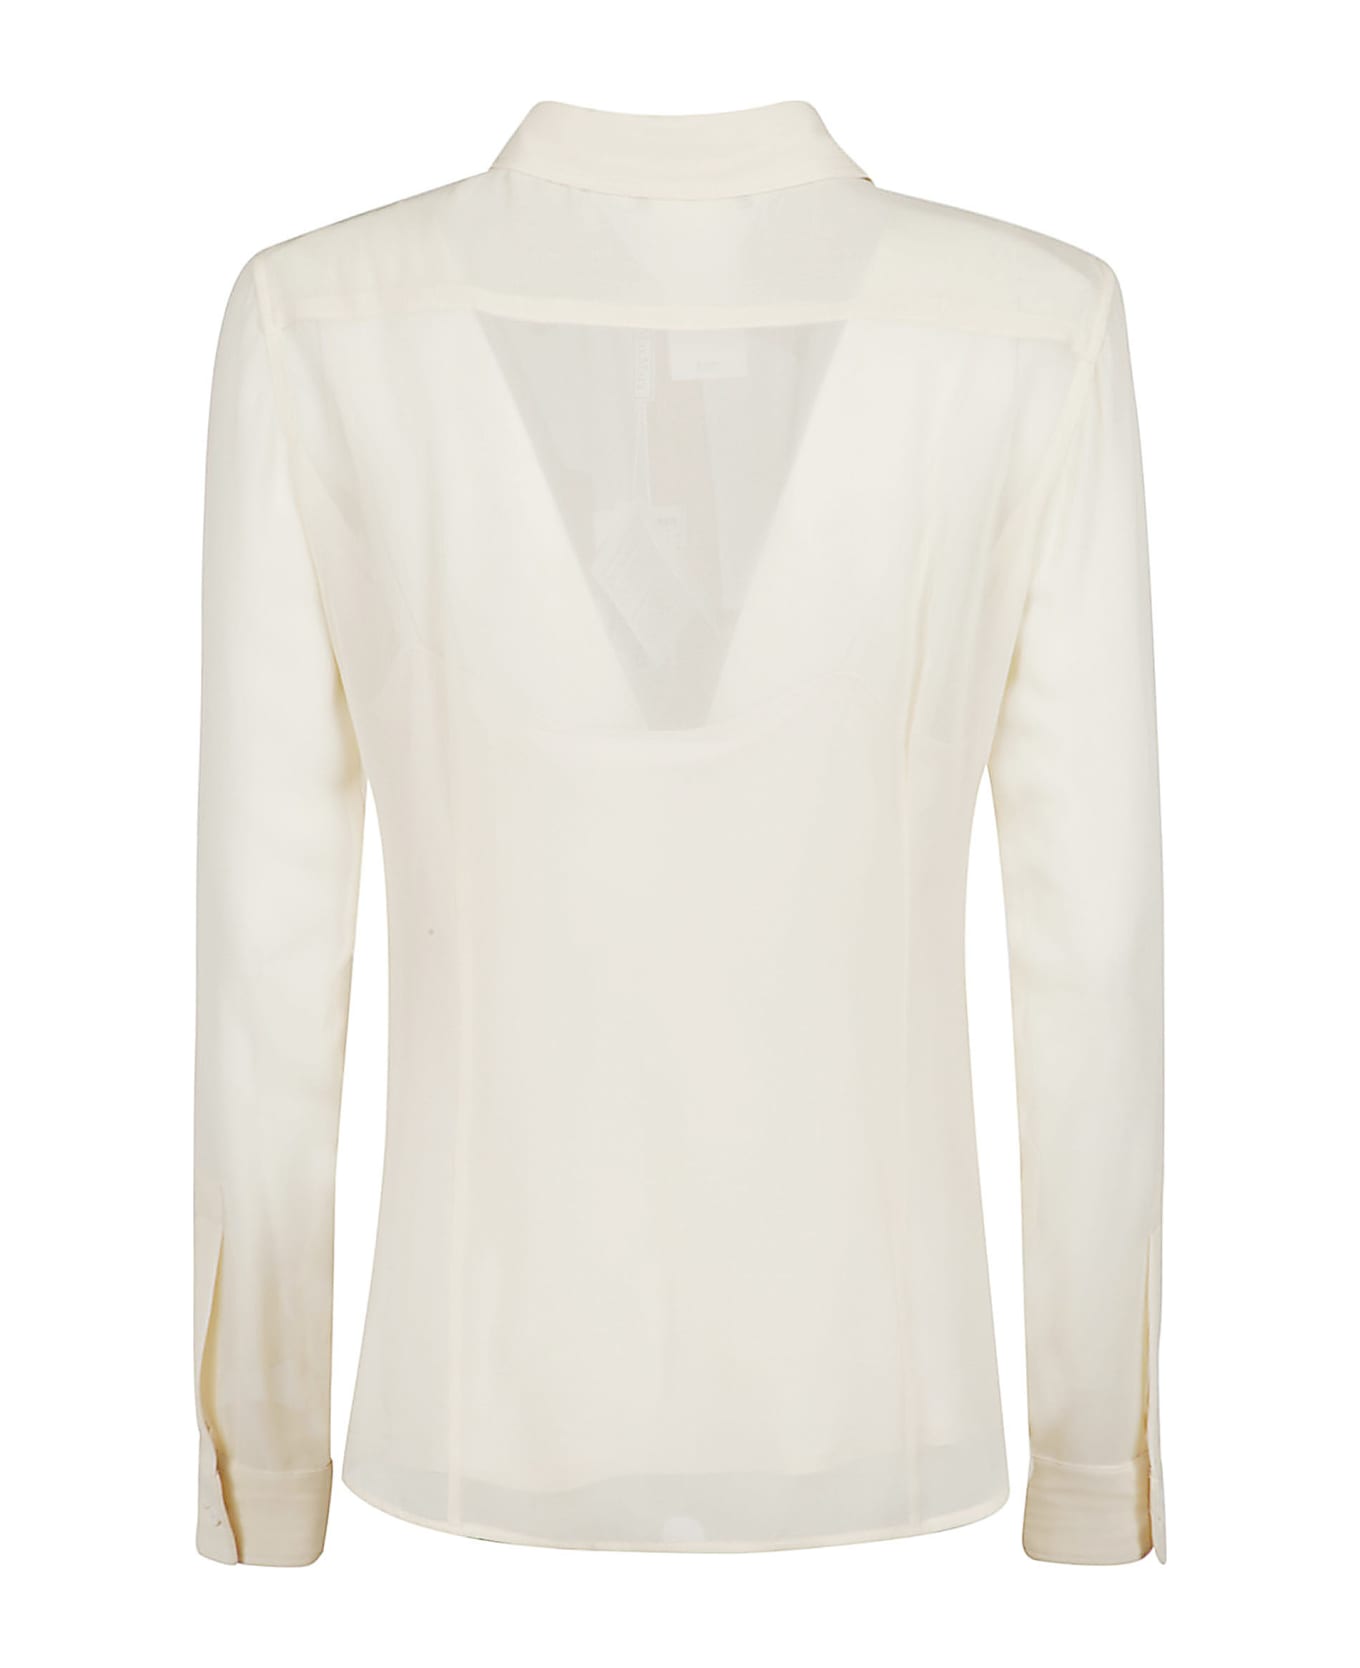 Max Mara Vongola Shirt - White